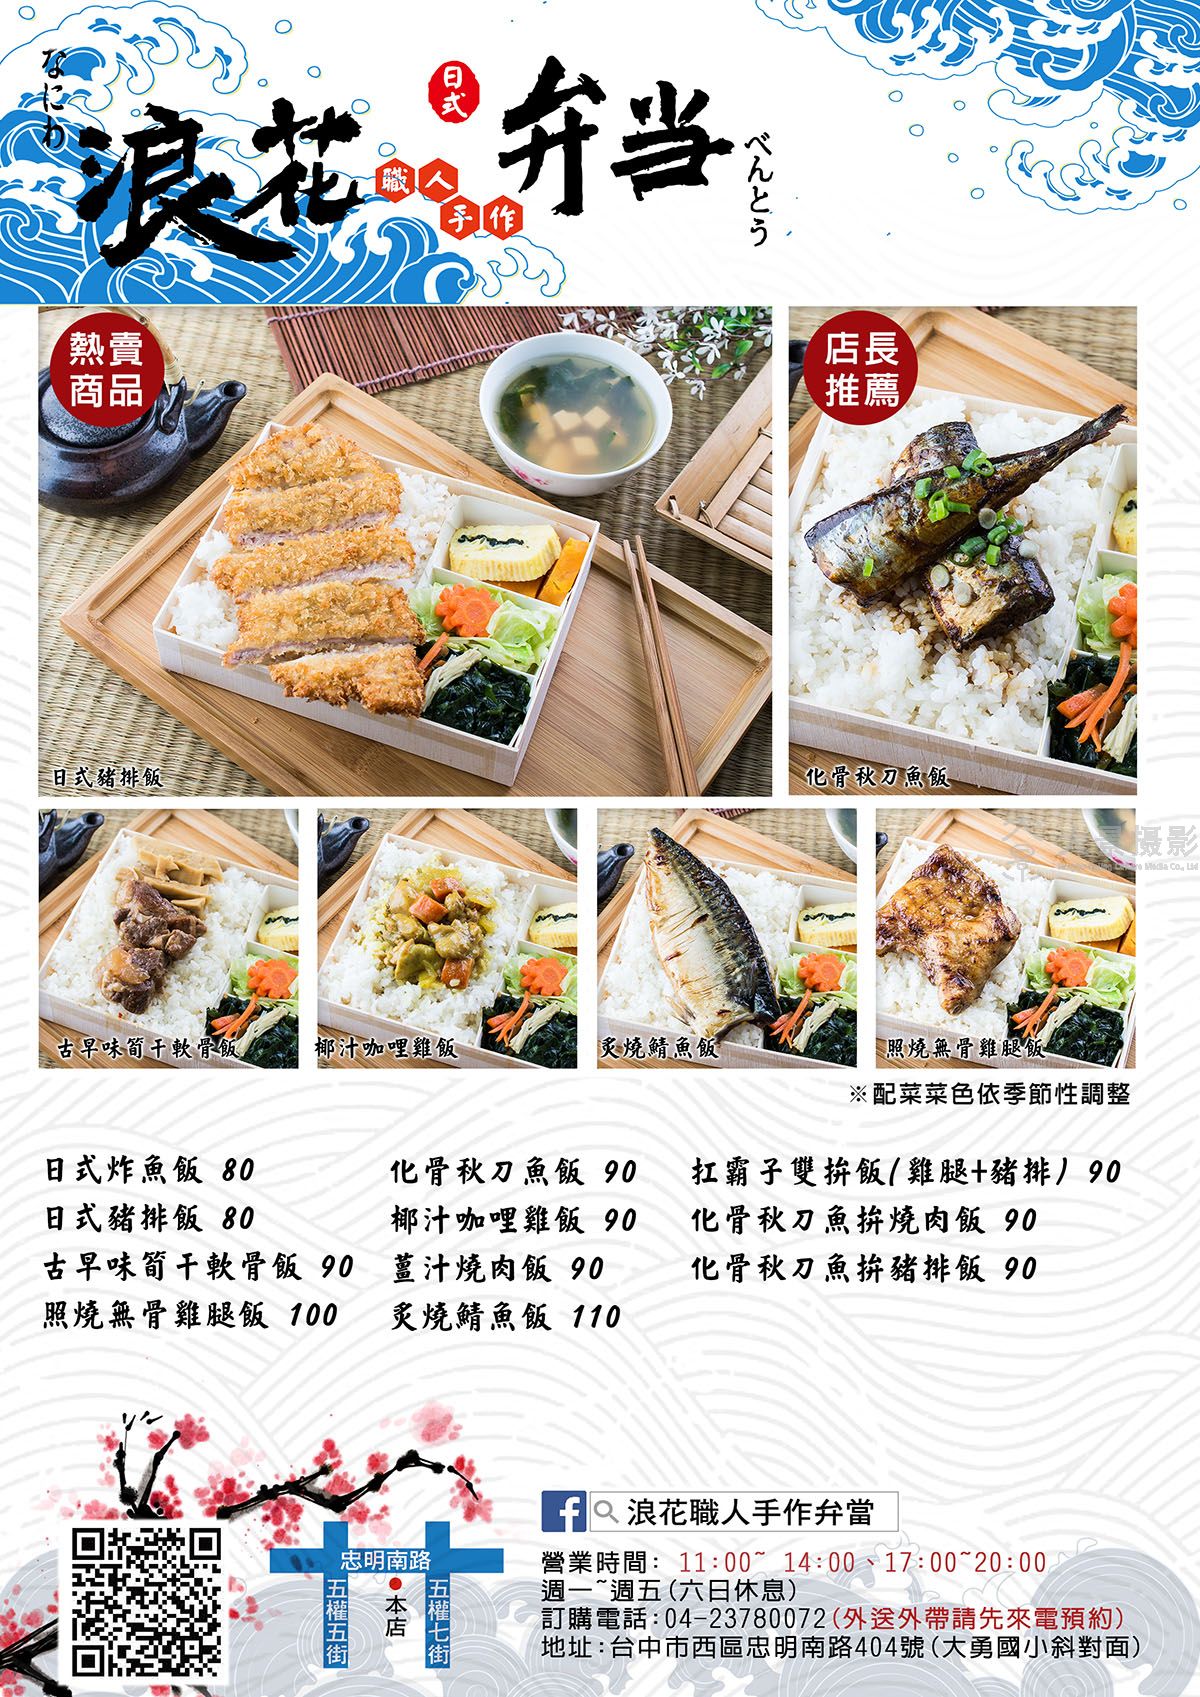 上海菜单设计哪家好